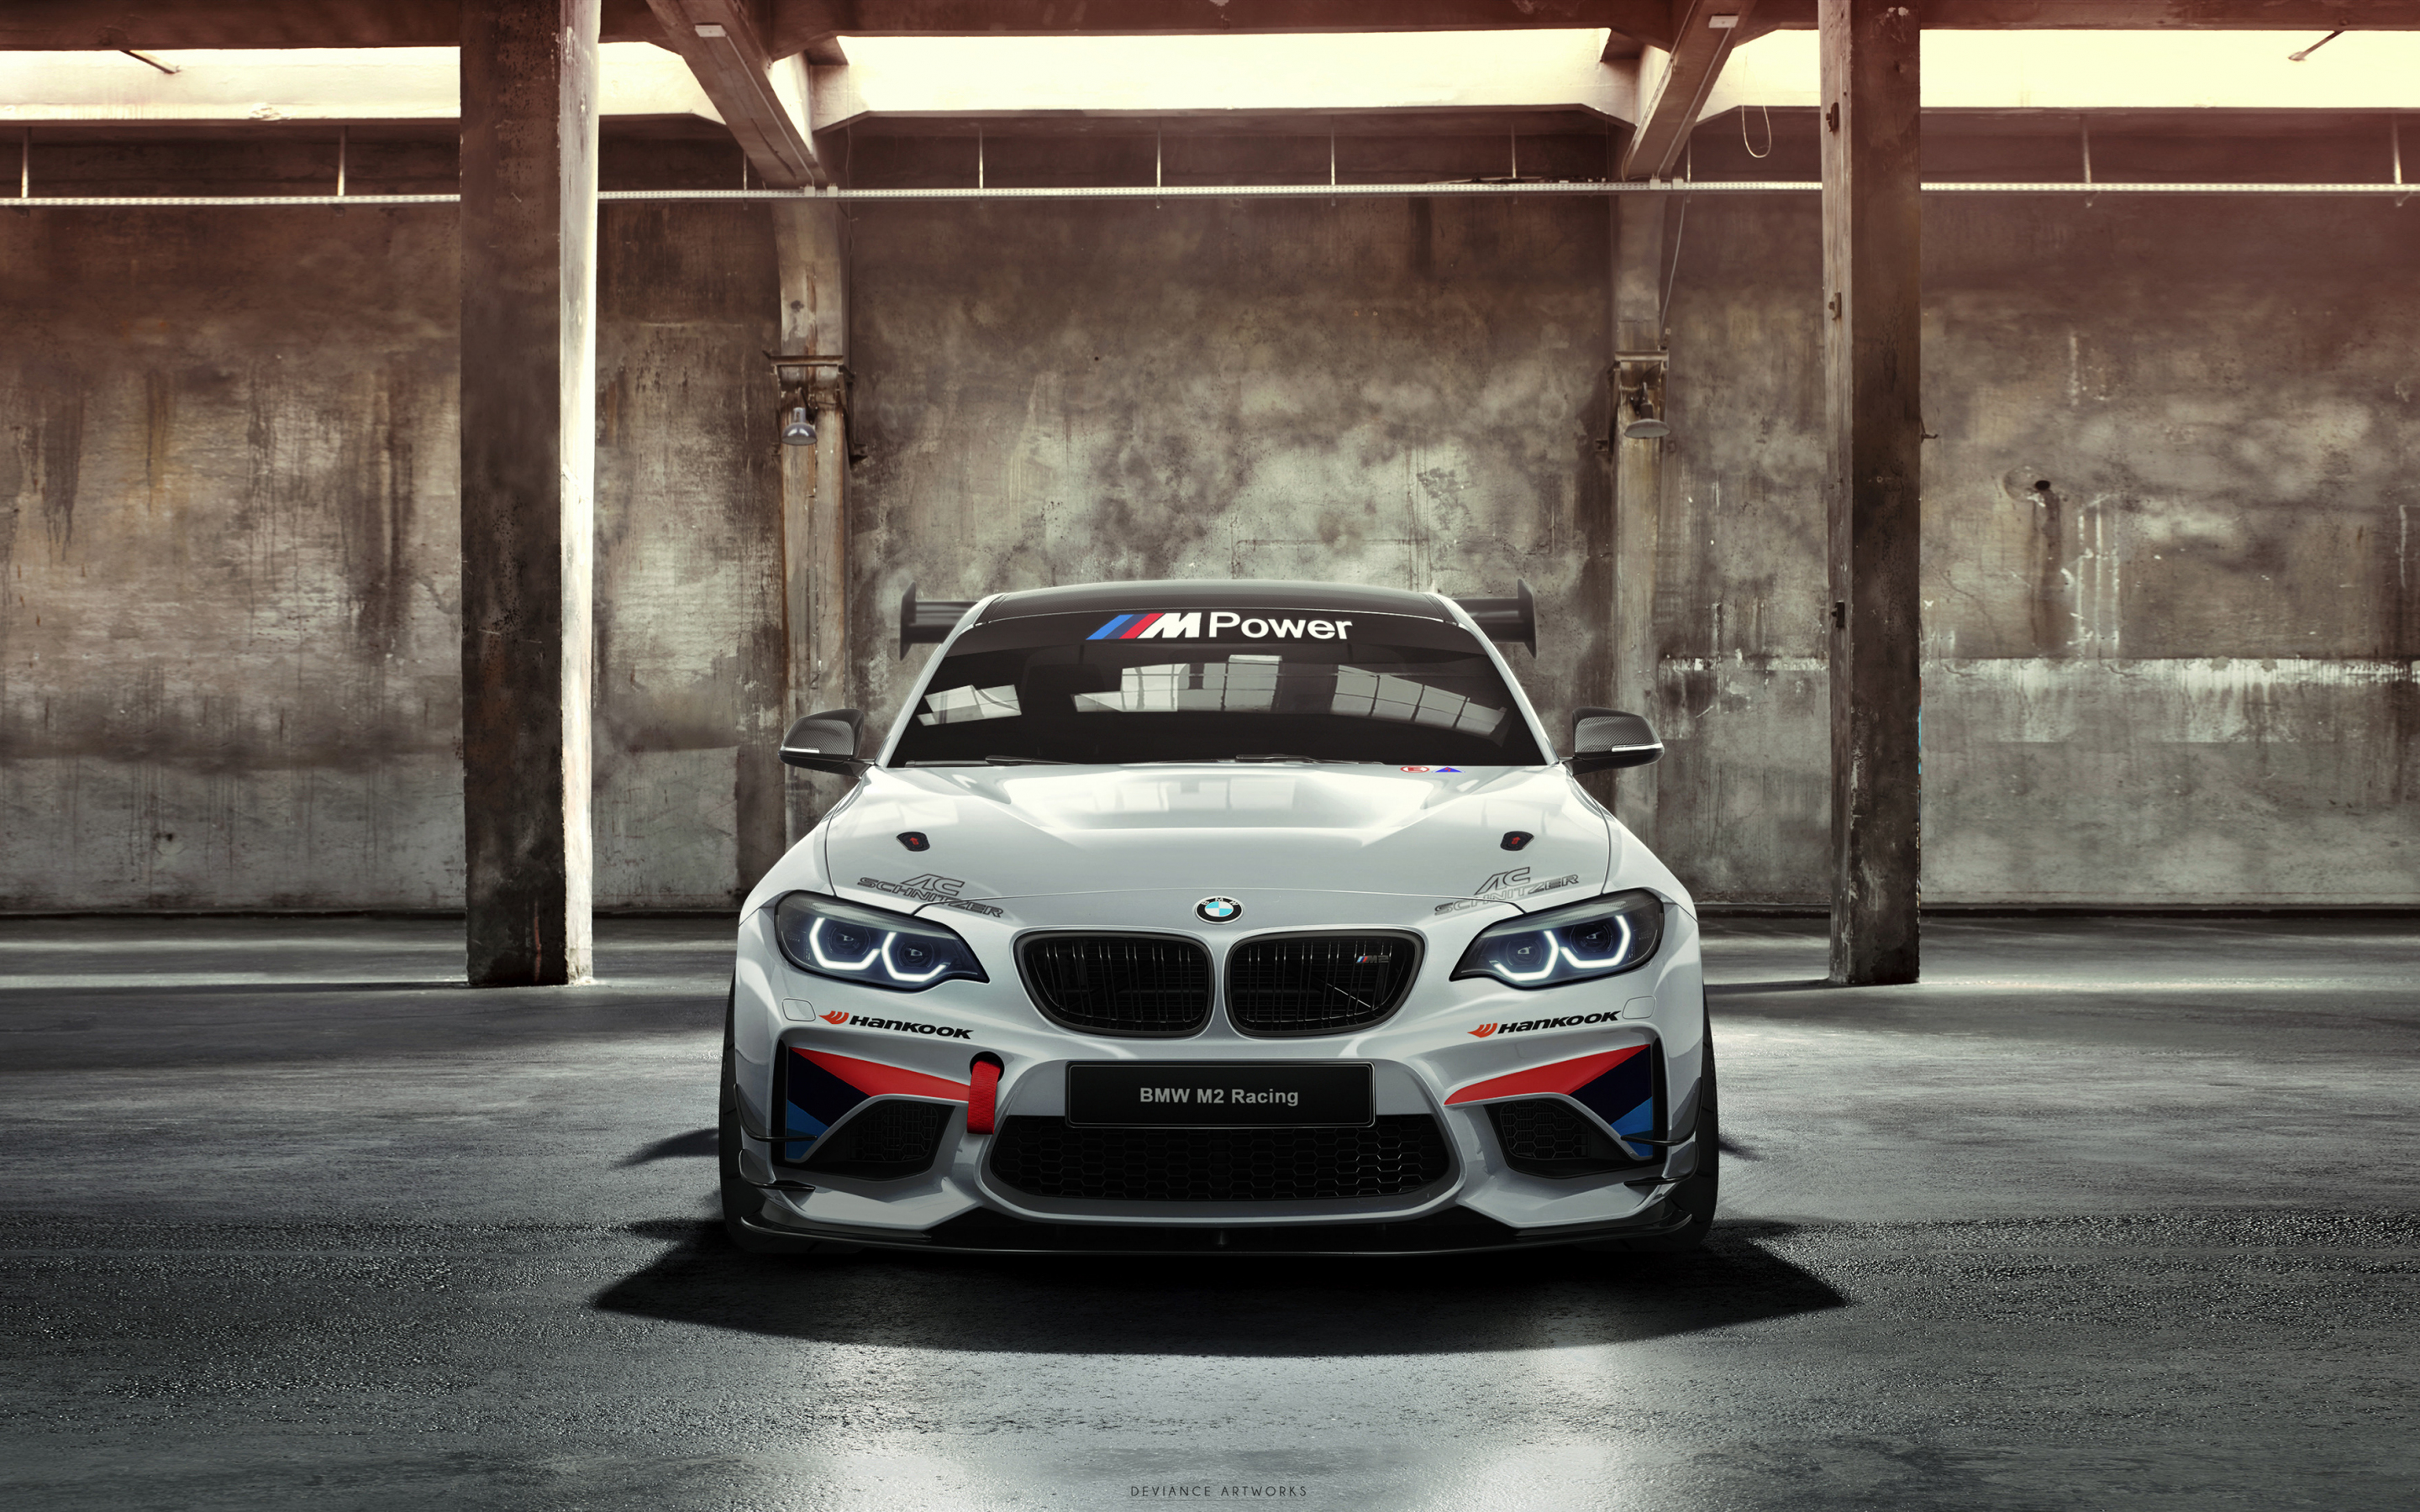 BMW M235i Racing Cup, AC Schnitzer, Racing car, front, 2880x1800 wallpaper